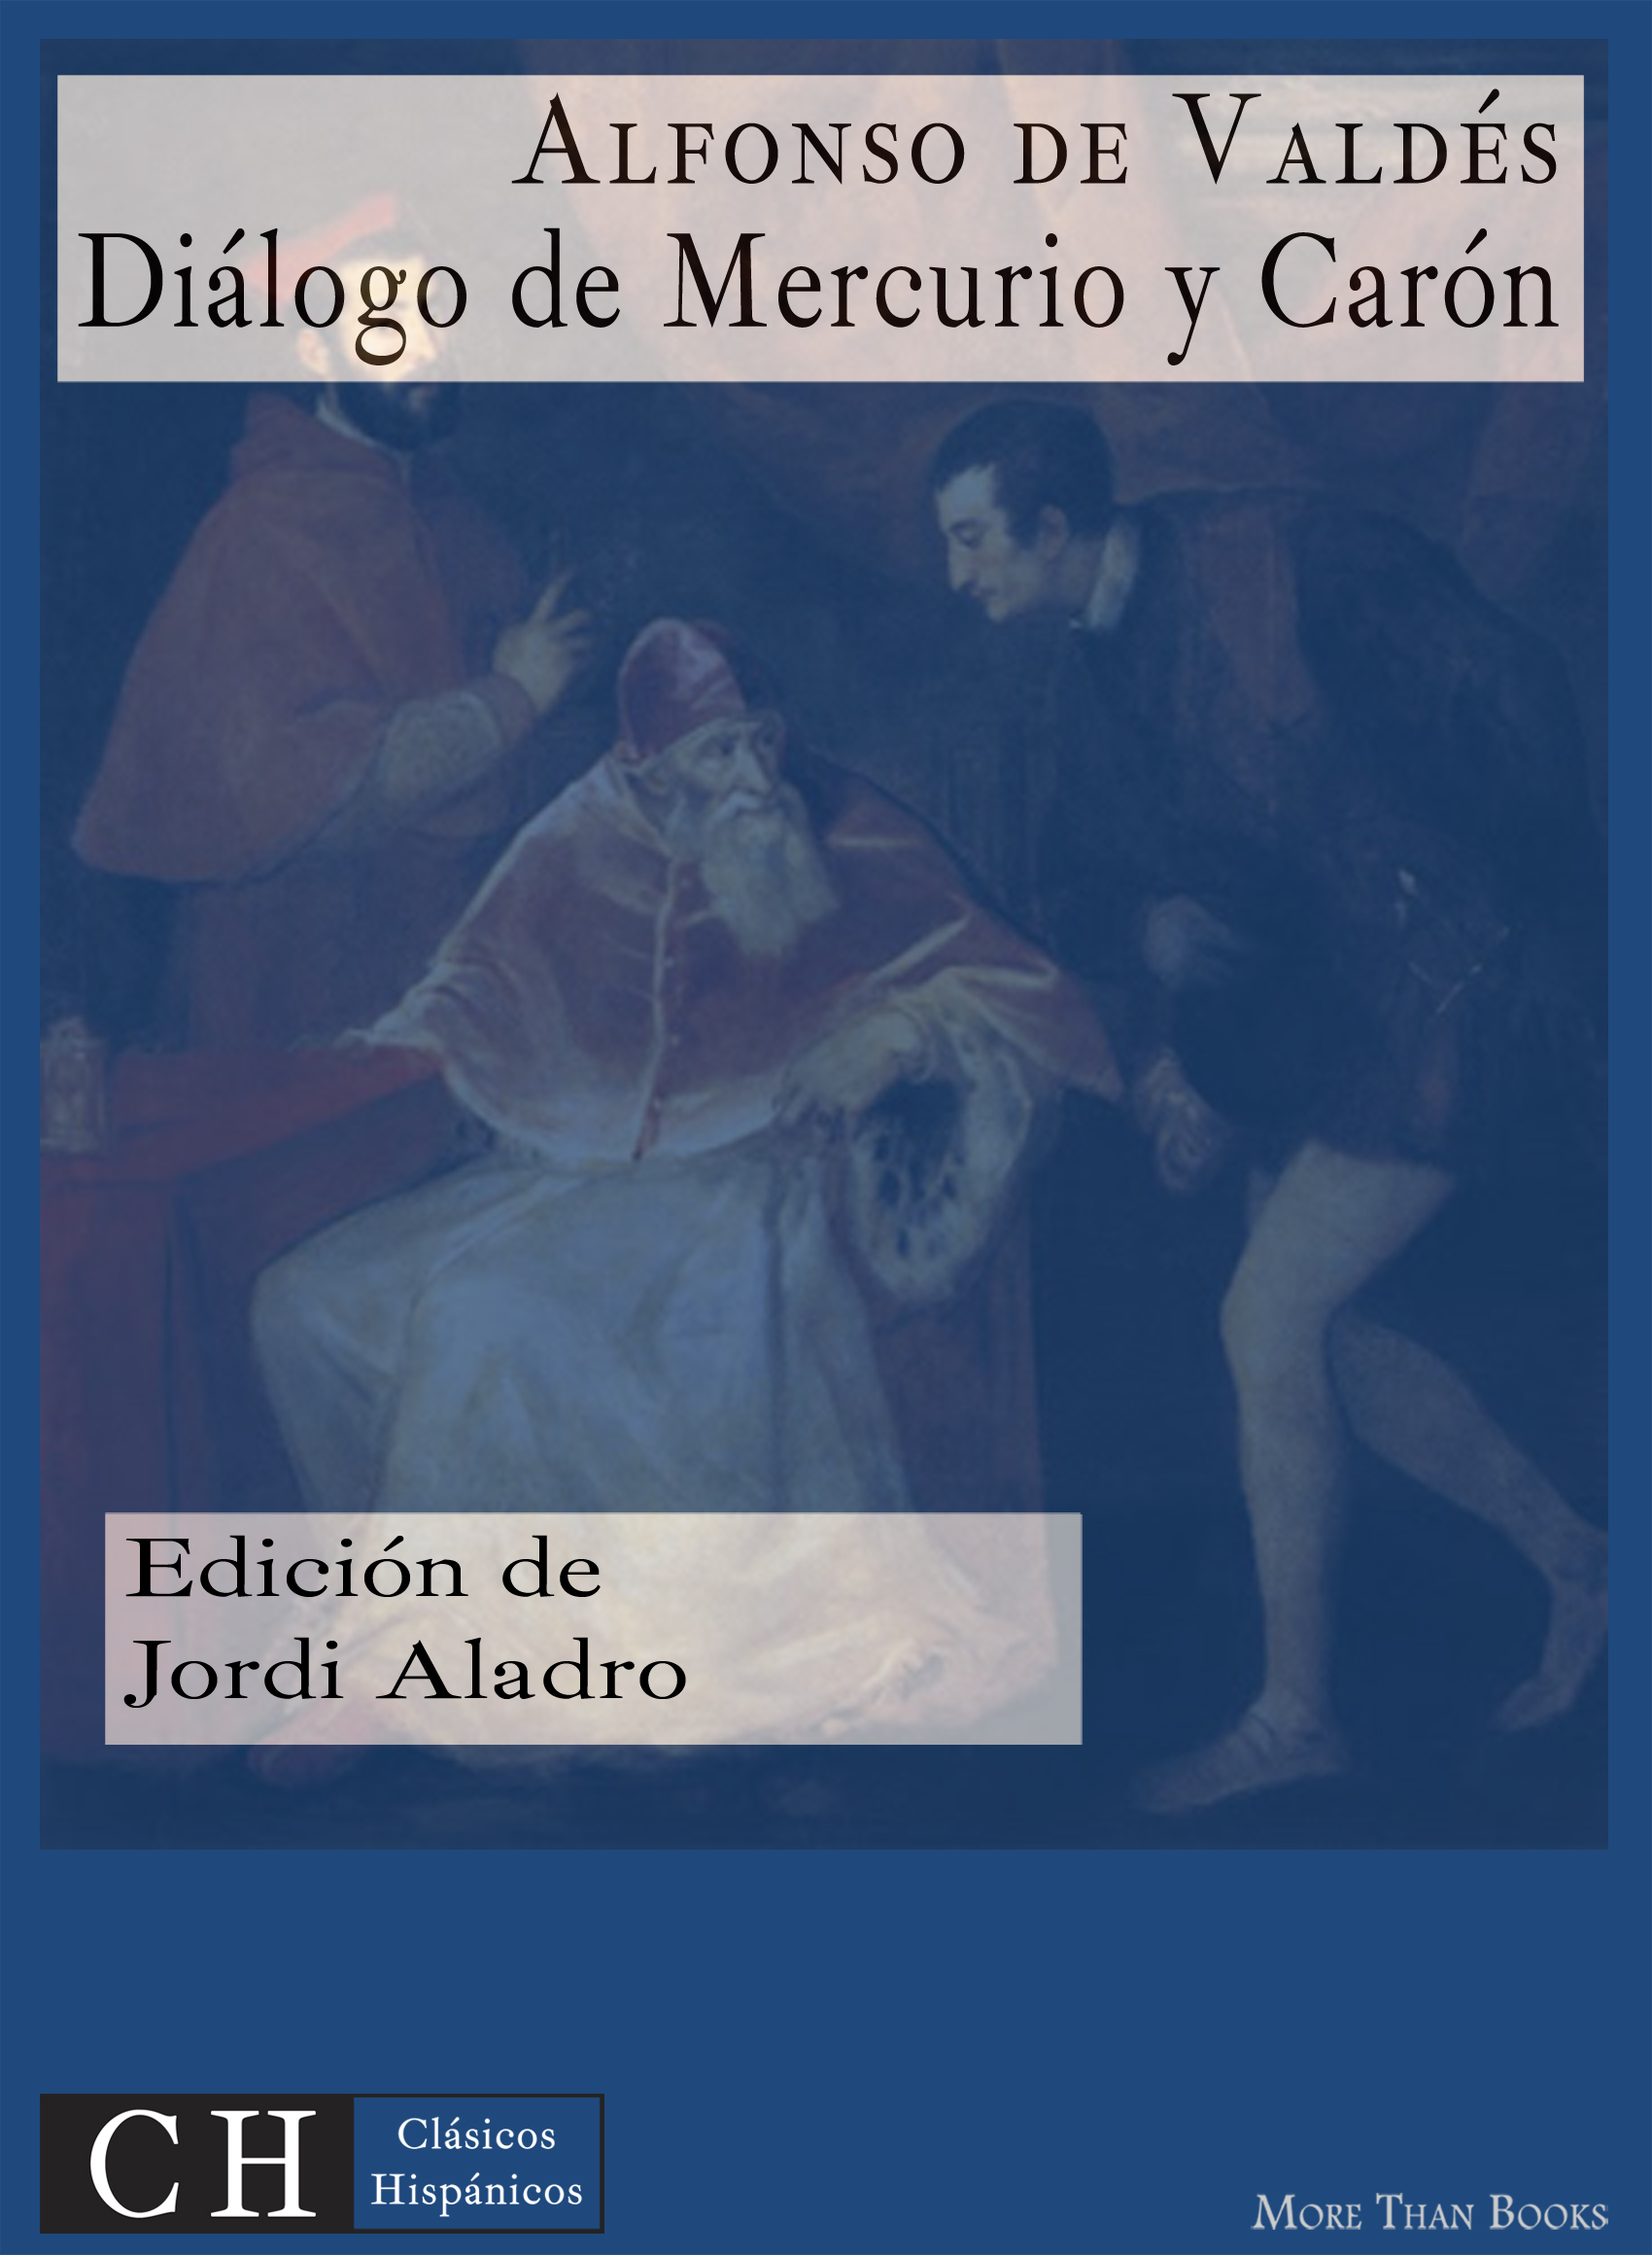 Imagen de portada del libro Diálogo de Mercurio y Carón